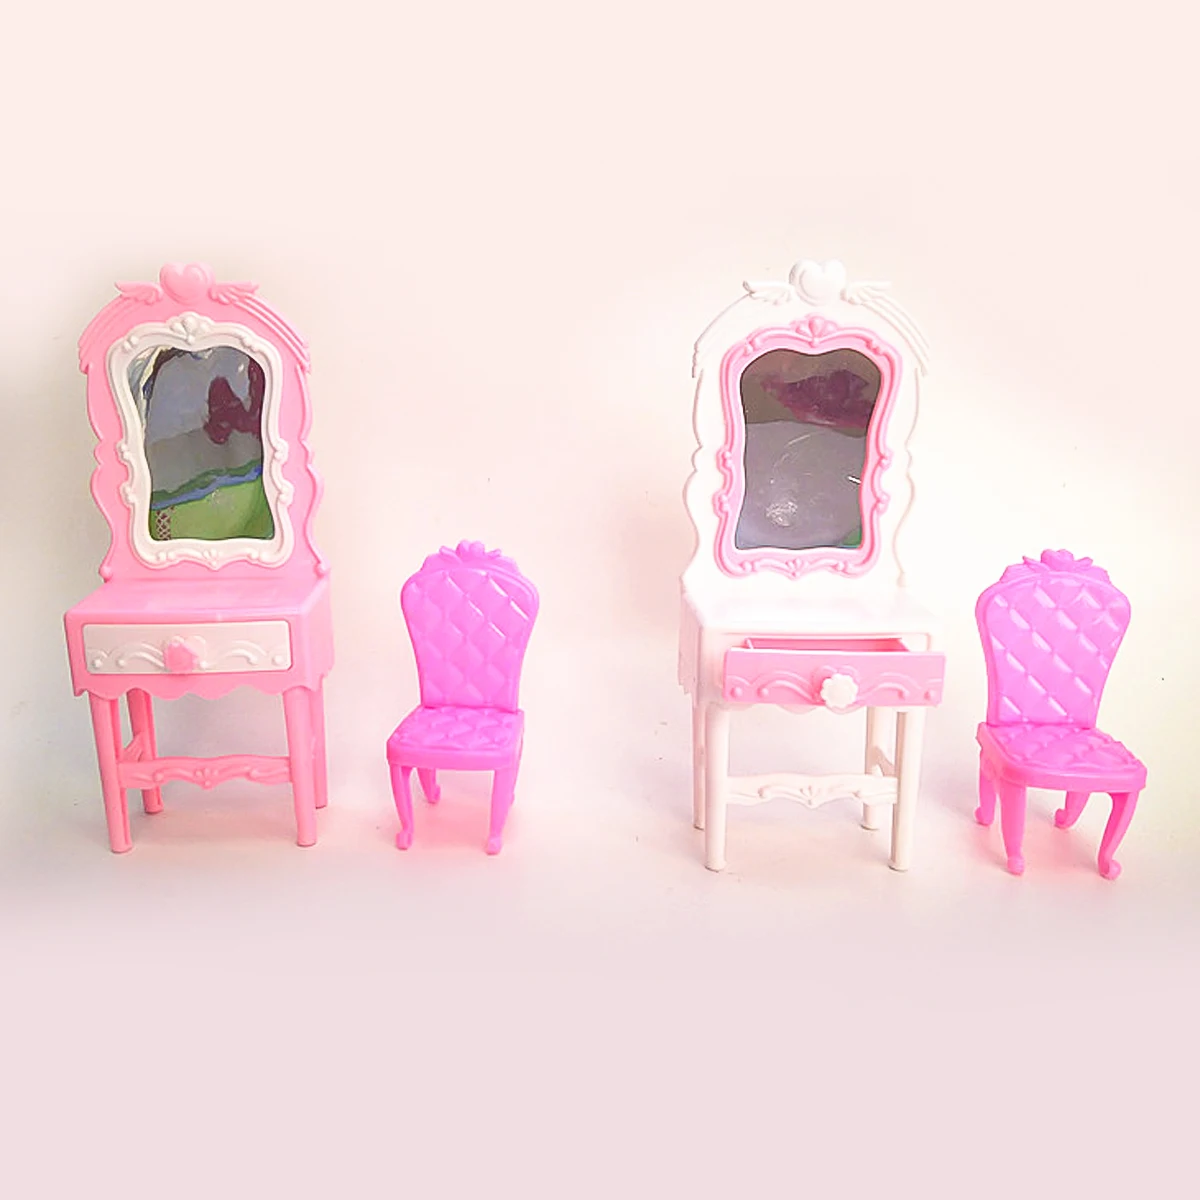 1 шт. Кукольный дом шкаф игрушка принцесса спальня мебель шкаф гардероб для кукол игрушки, подарки для детей аксессуары для кукол